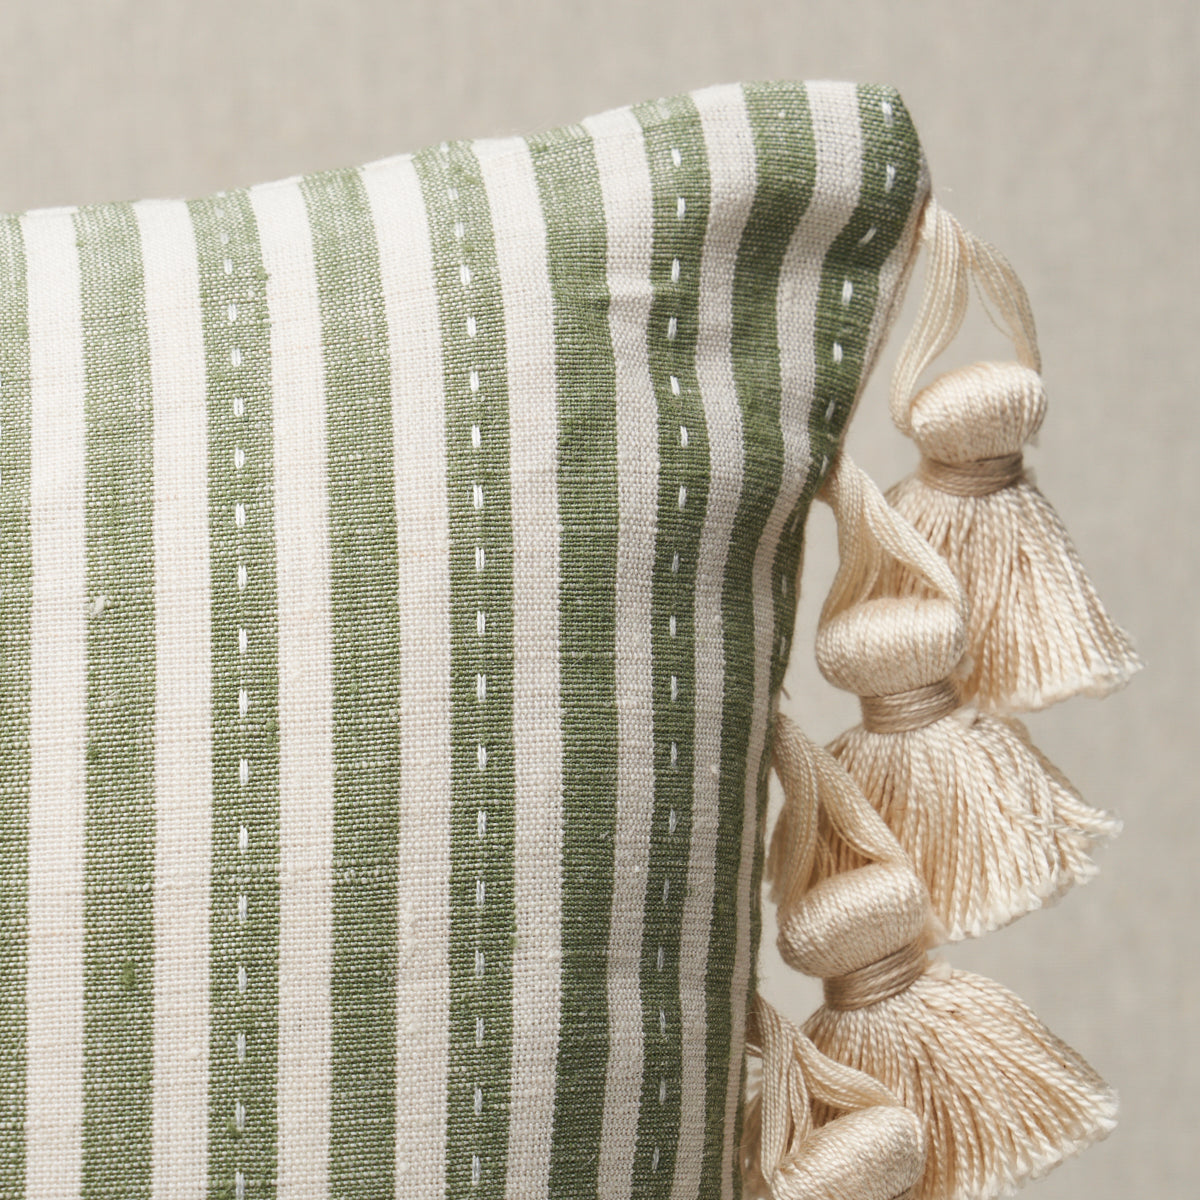 Mathis Ticking Stripe Pillow | Sage